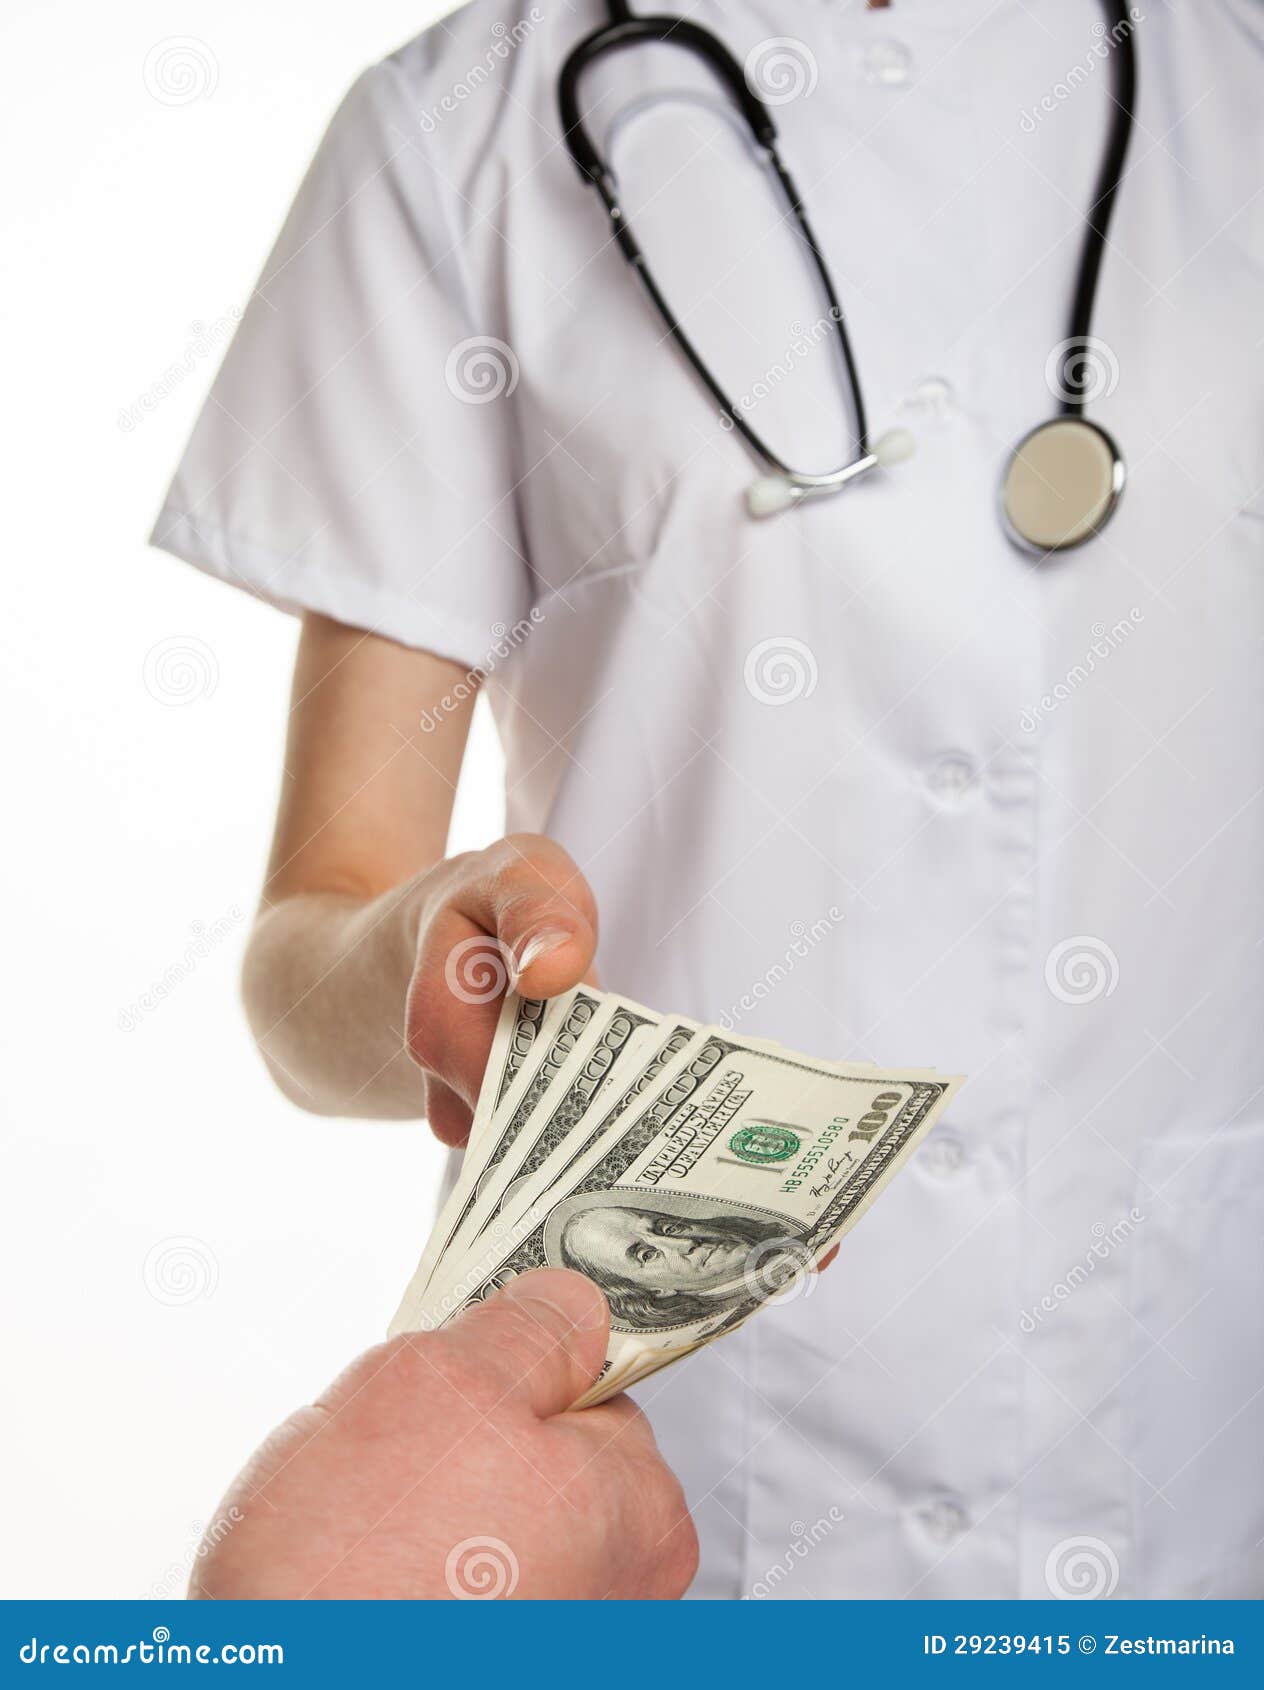 Деньги врачам в больнице. Врач с деньгами. Деньги пациент. Медицинские работники и деньги. Коррупция в медицине.